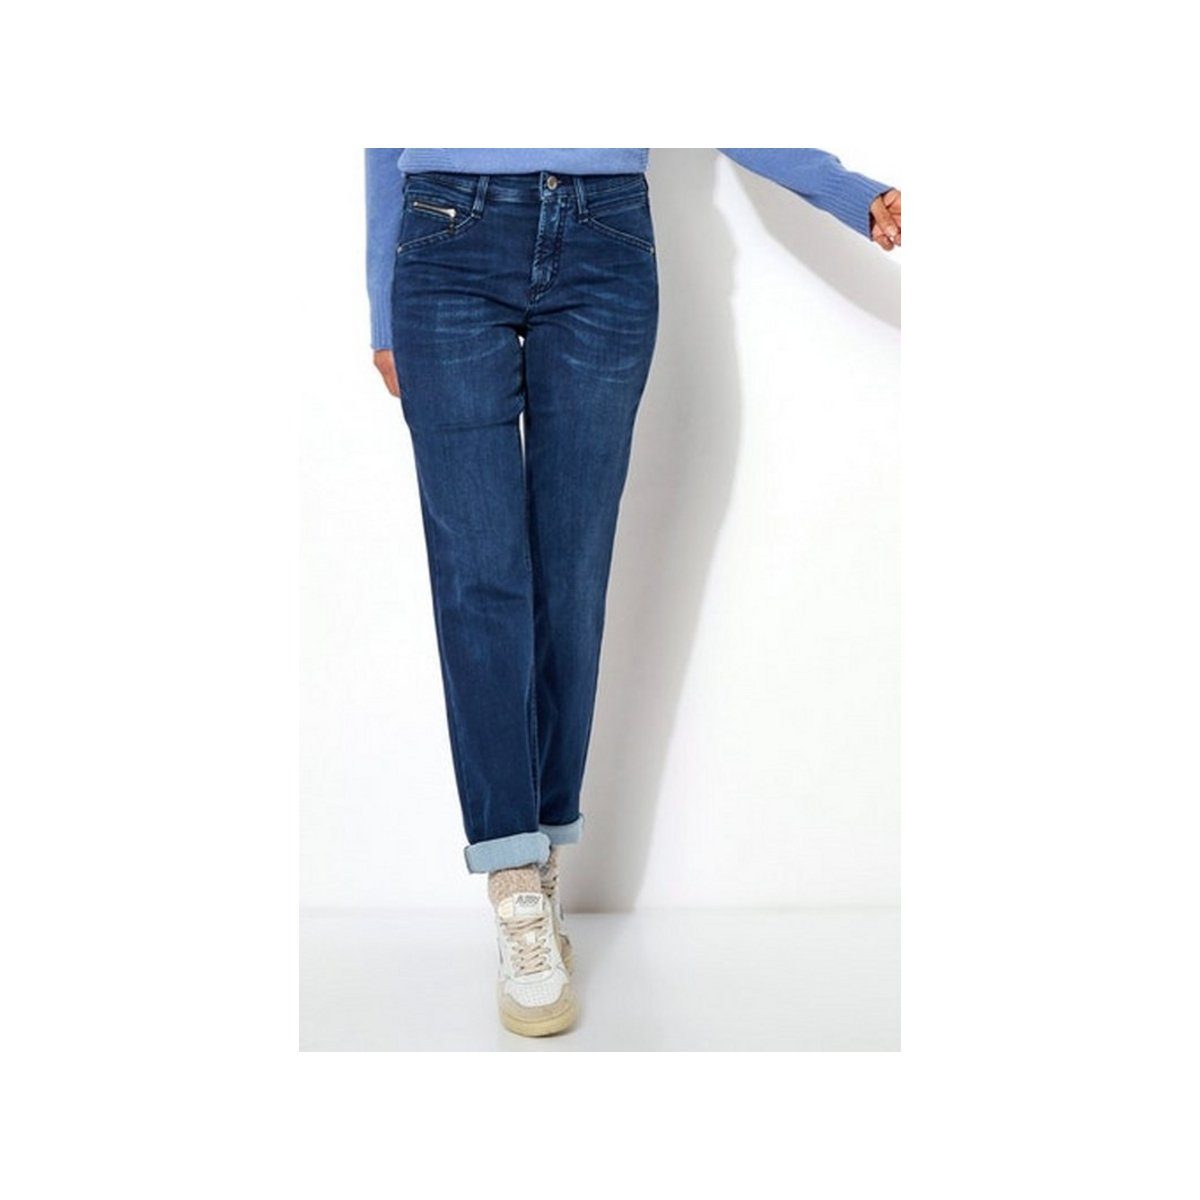 584 used (1-tlg) dark 5-Pocket-Jeans dunkel-blau blue TONI